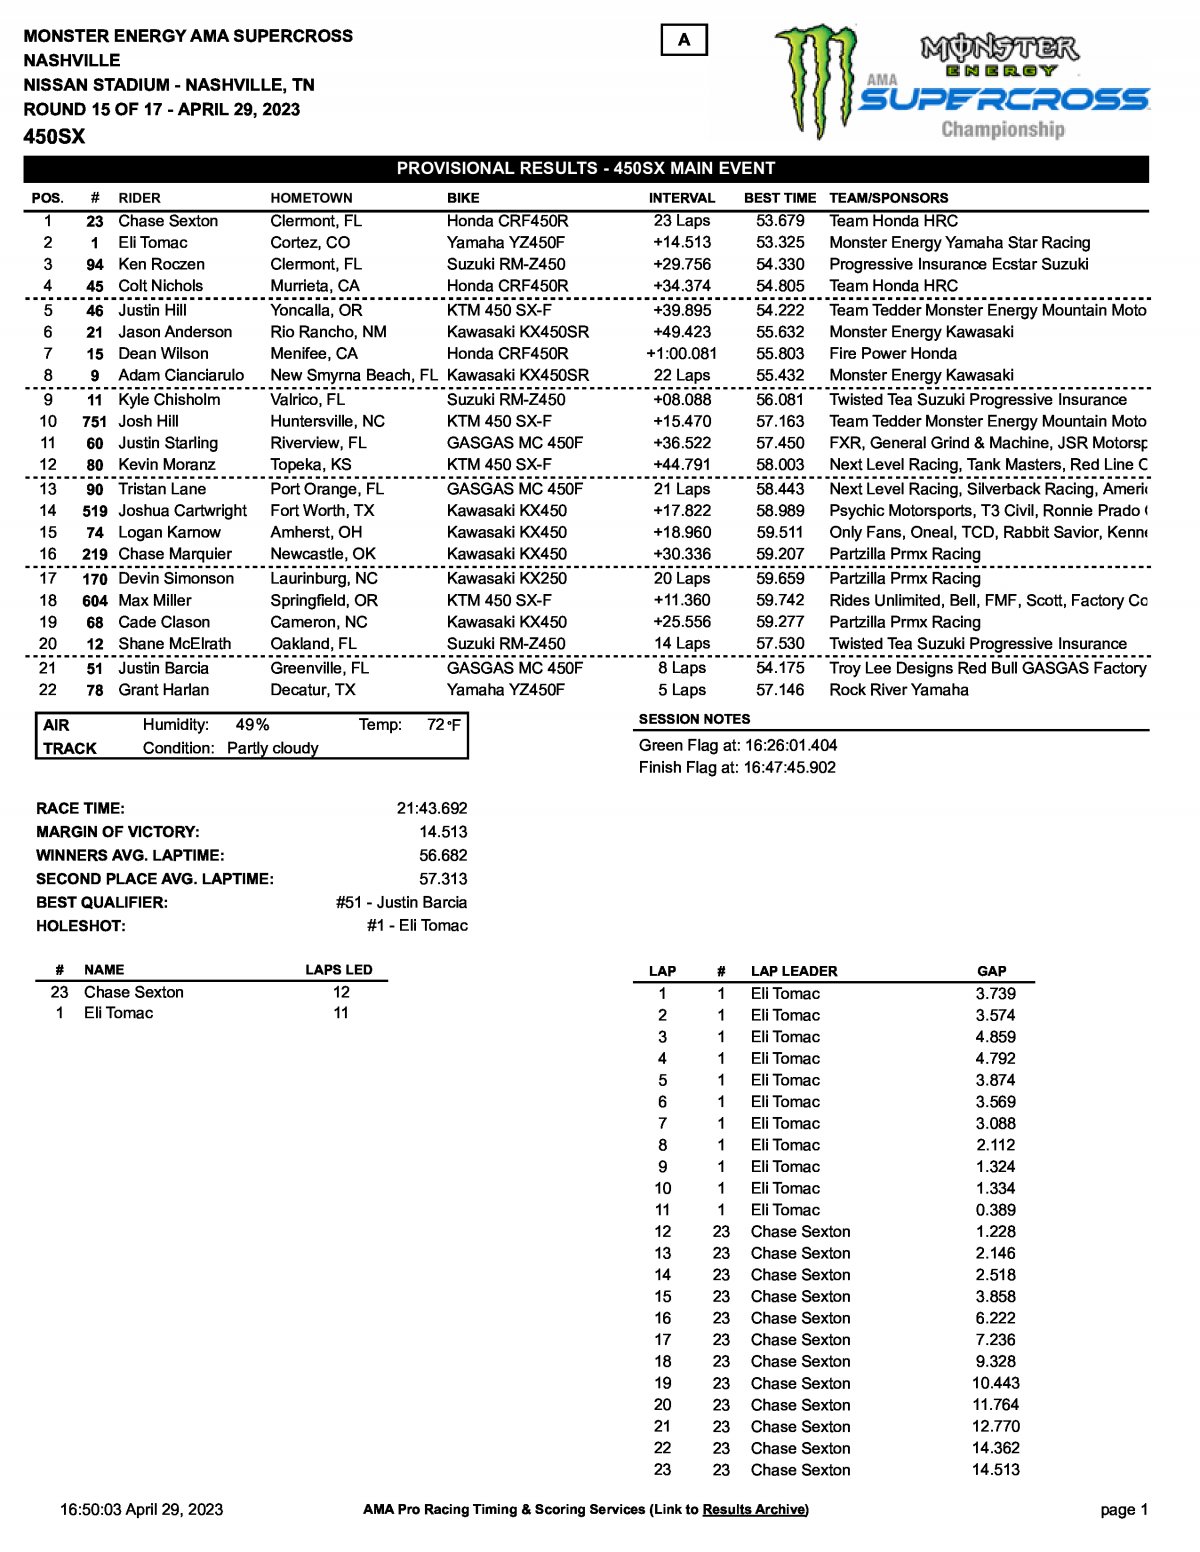 Результаты 13 этапа AMA Supercross 450SX, Нэшвилл (30/04/2023)